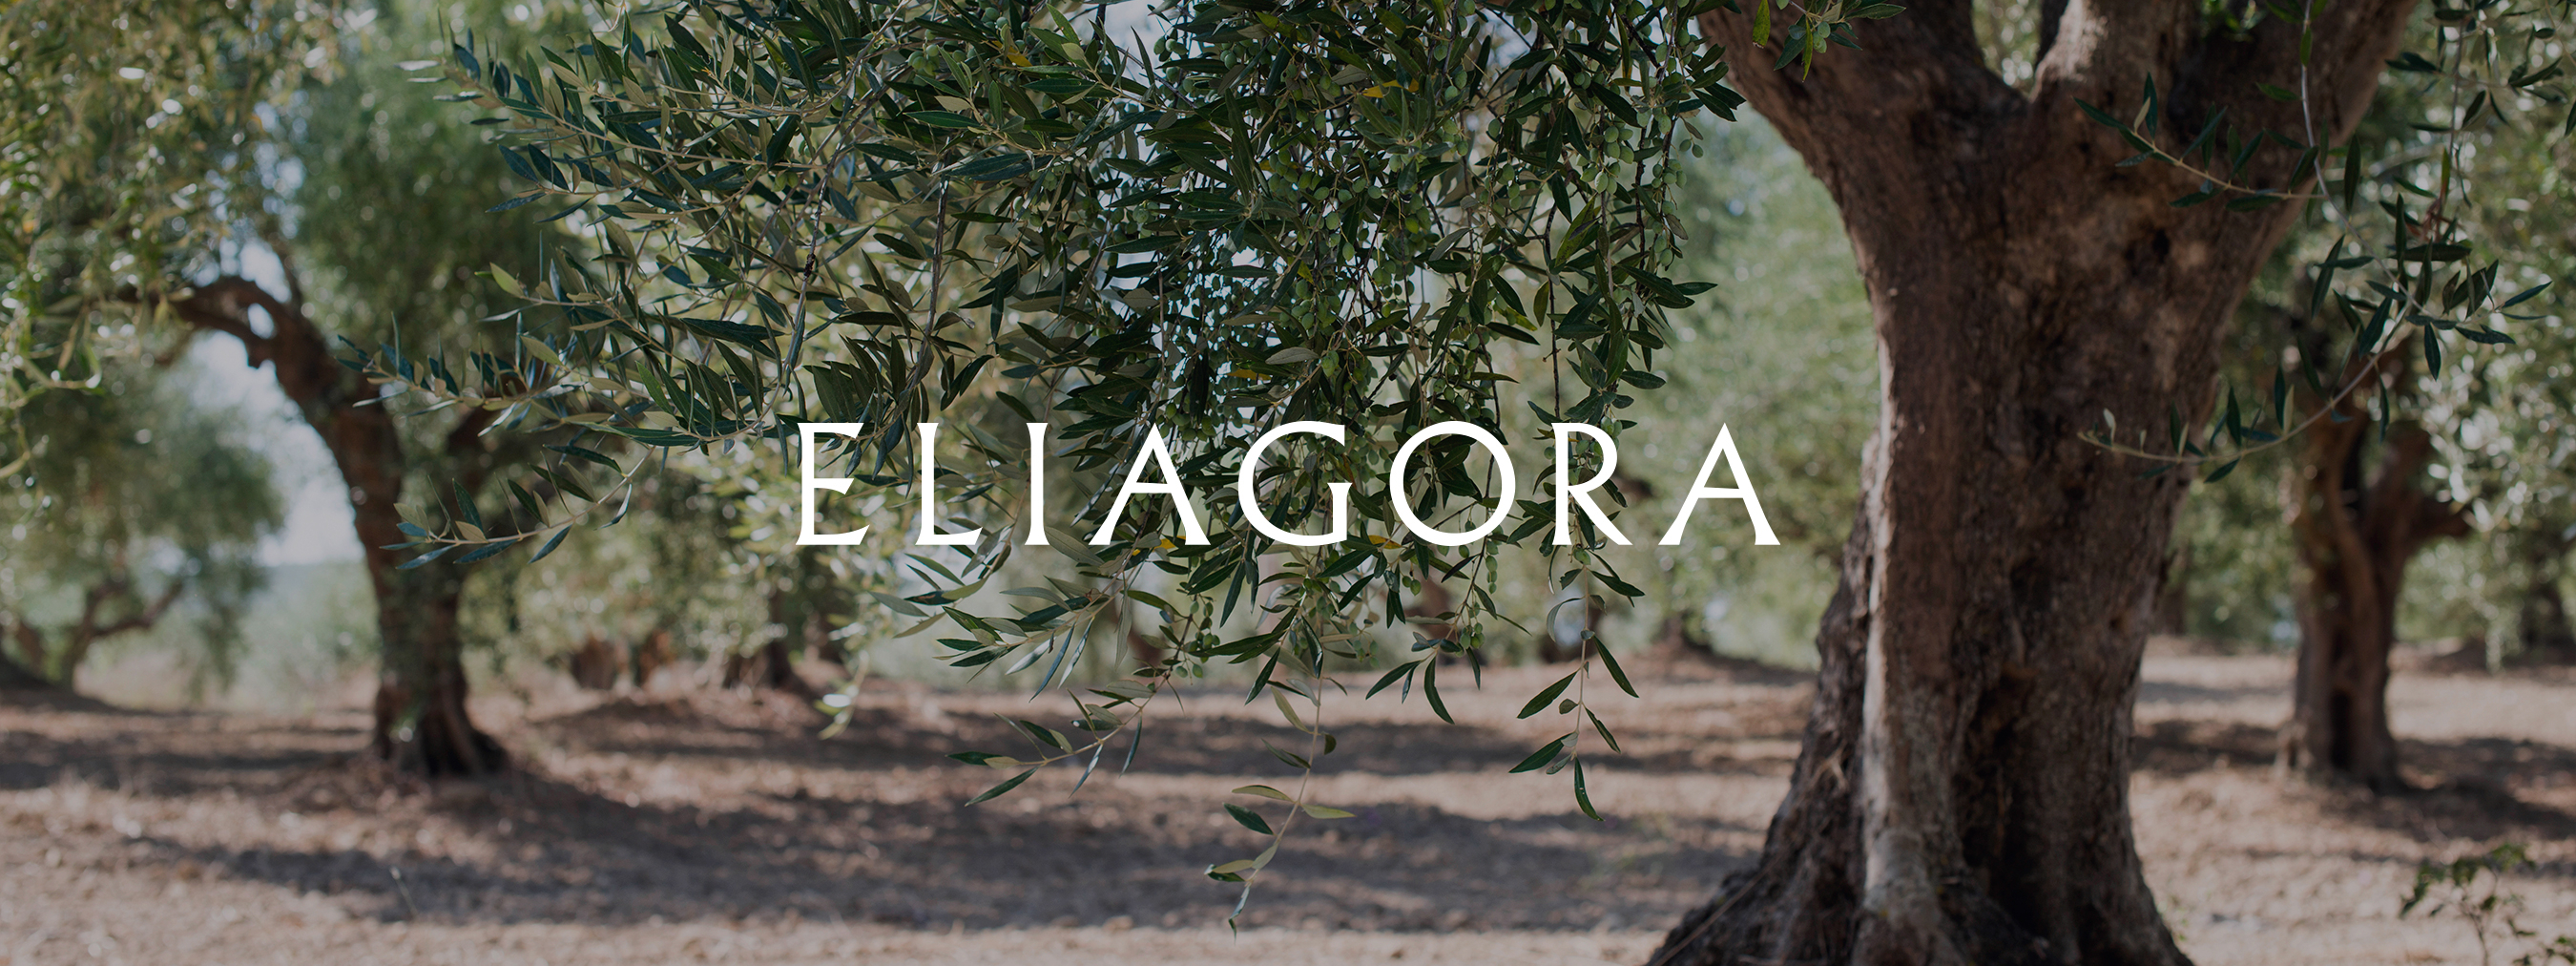 Разработка бренда Eliagora — греческого оливкового масла